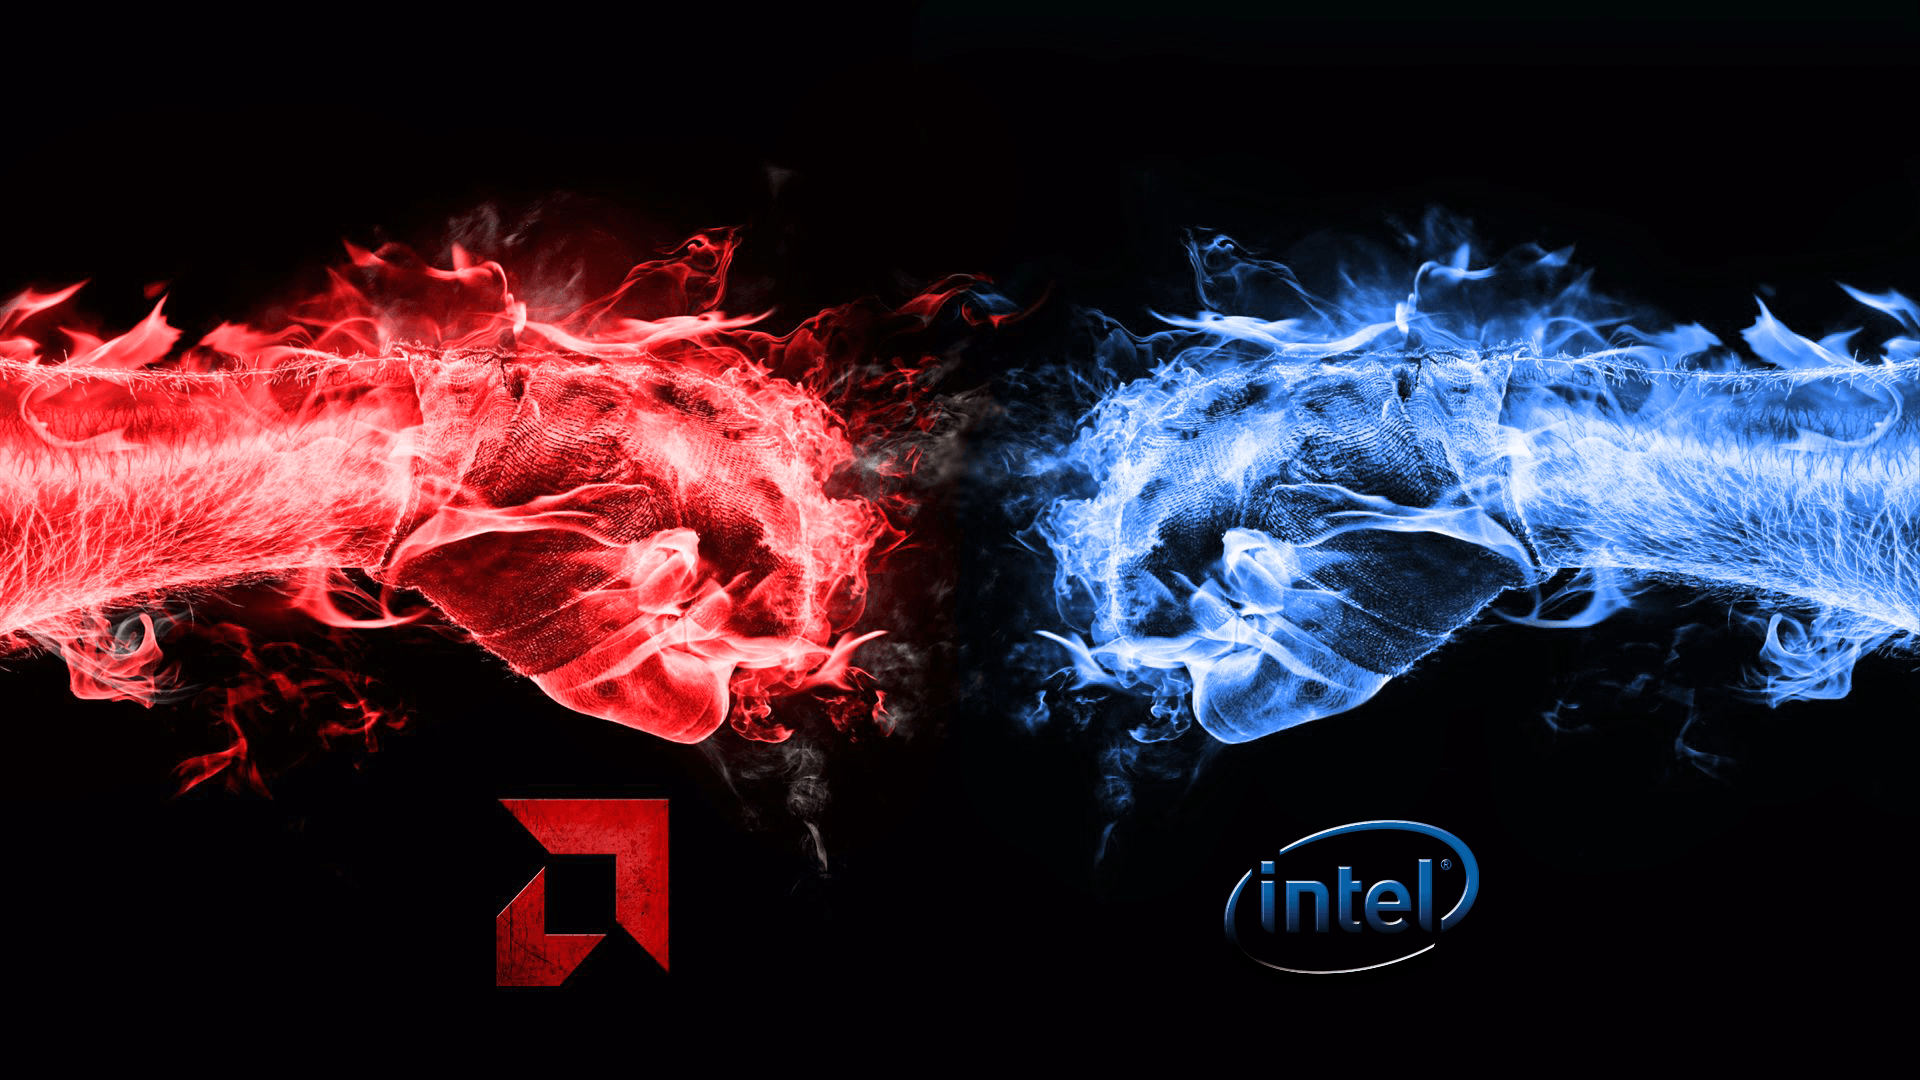 Intel vs Amd wallpaper